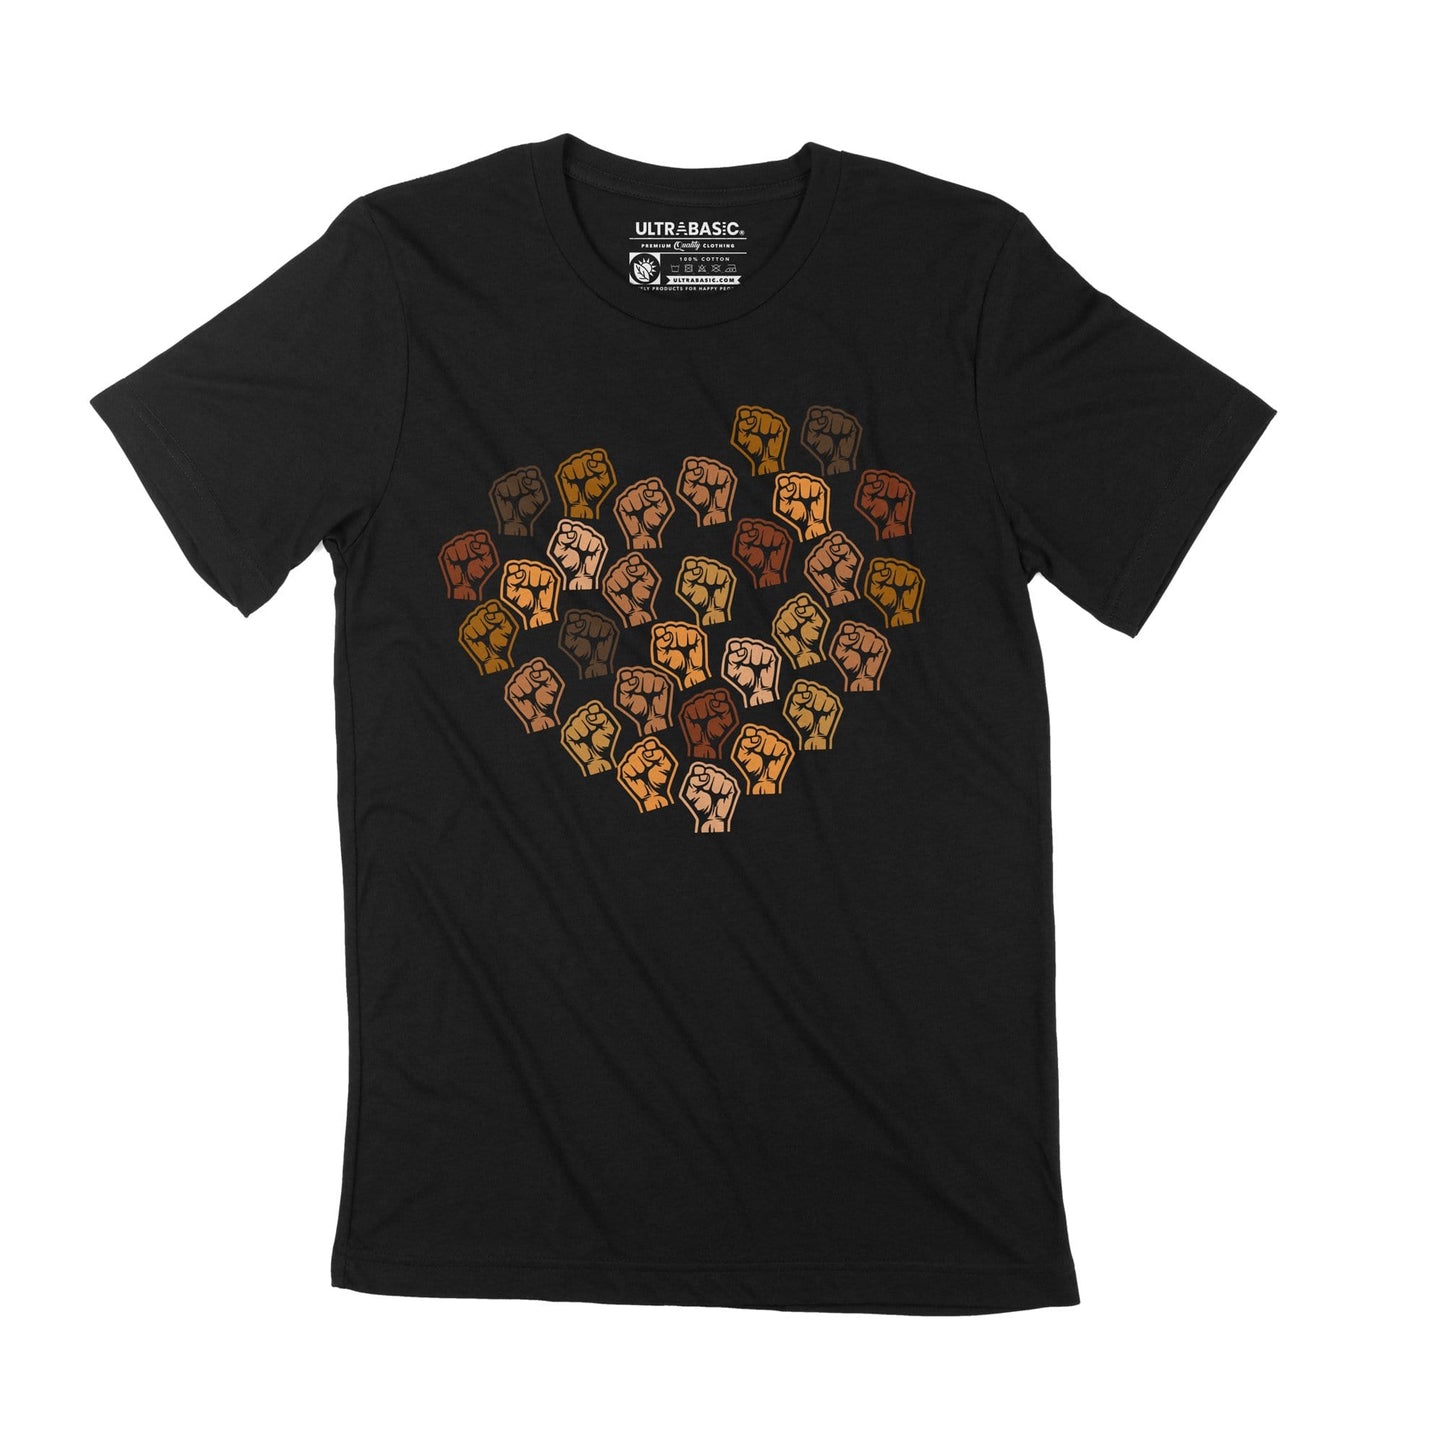 Unisex Adult T-Shirt George Floyd Black Lives Matter BLM Juneteenth Shirt